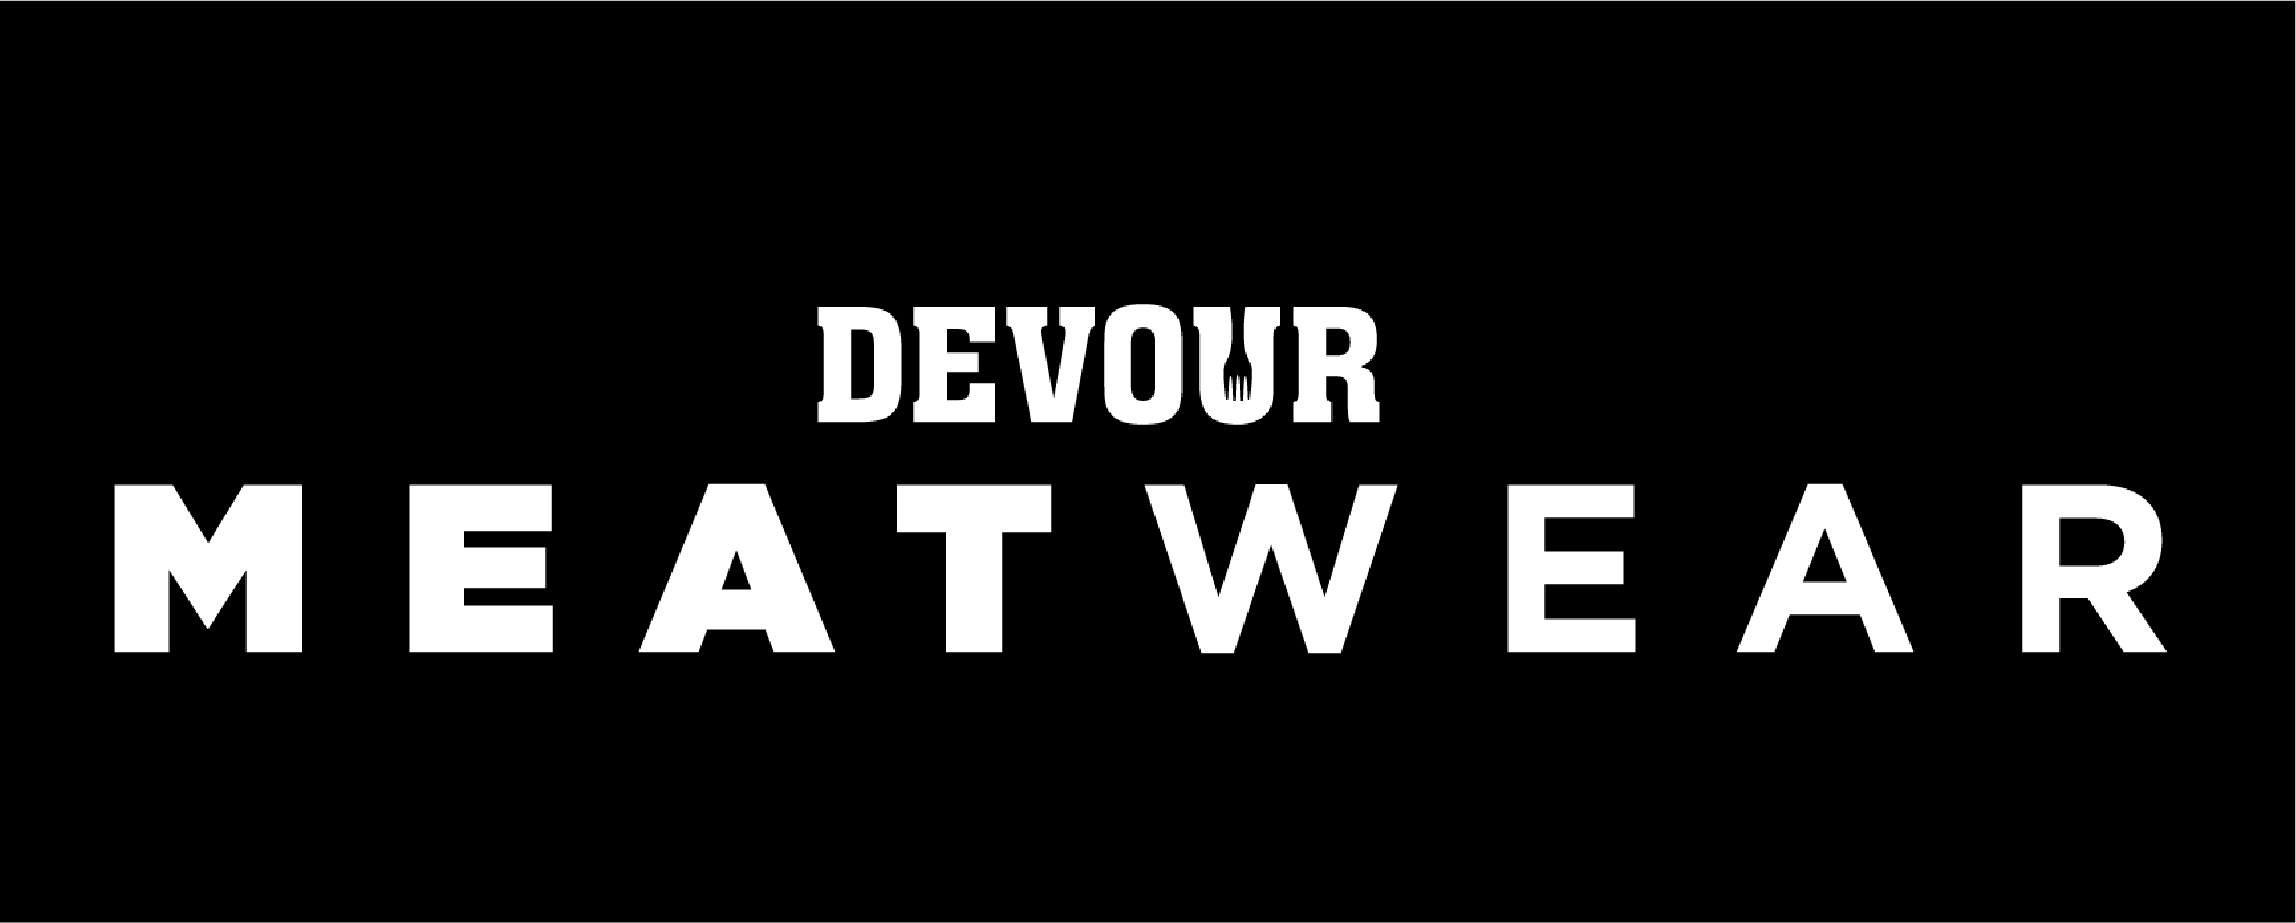 MeatWear_Devour_logo_revised.png